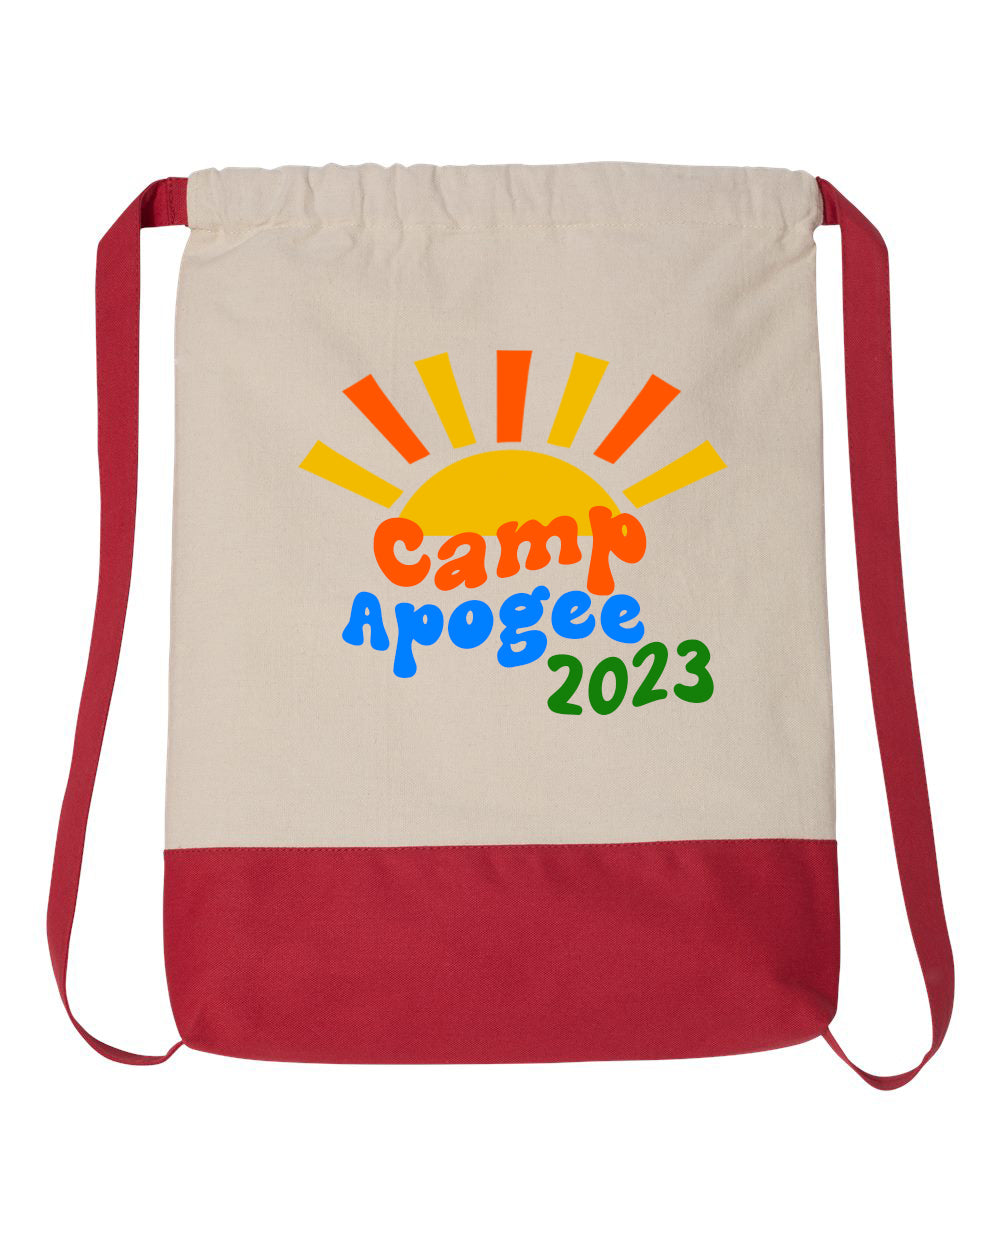 Hilltop Camp Design 2 Drawstring Bag